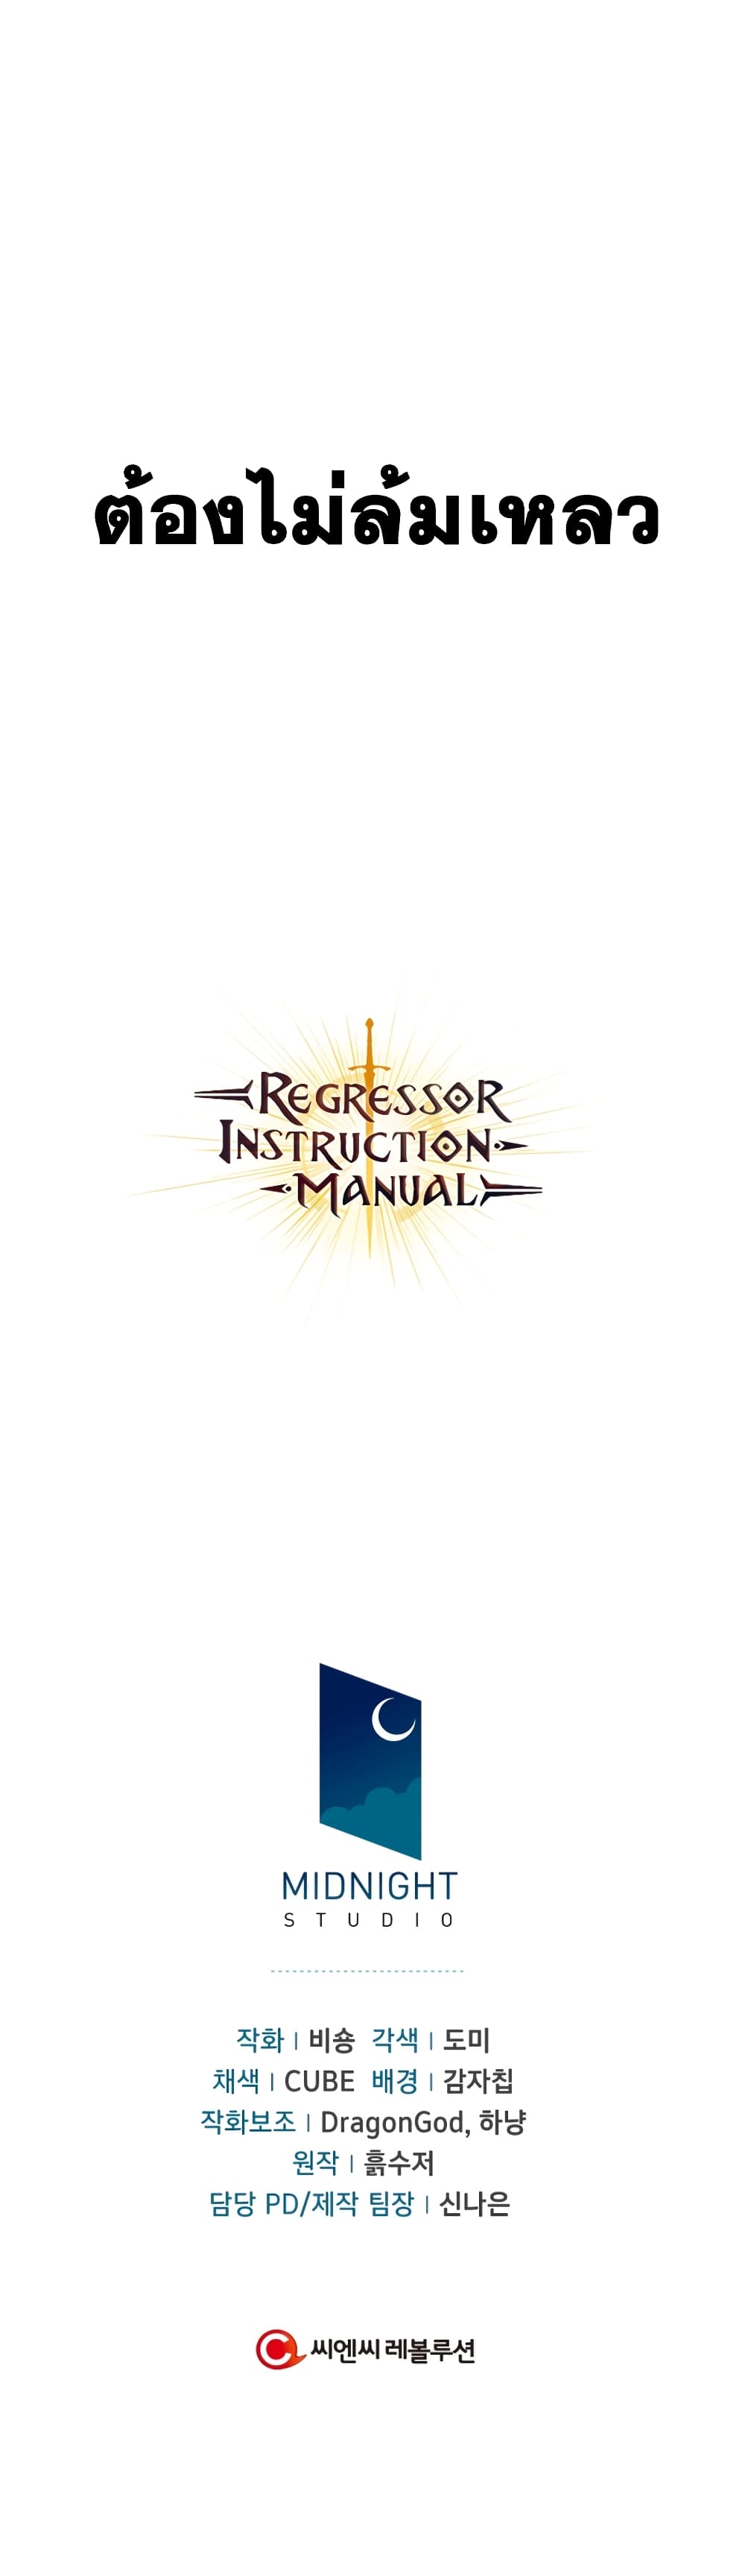 regressor instruction manuel 29 24